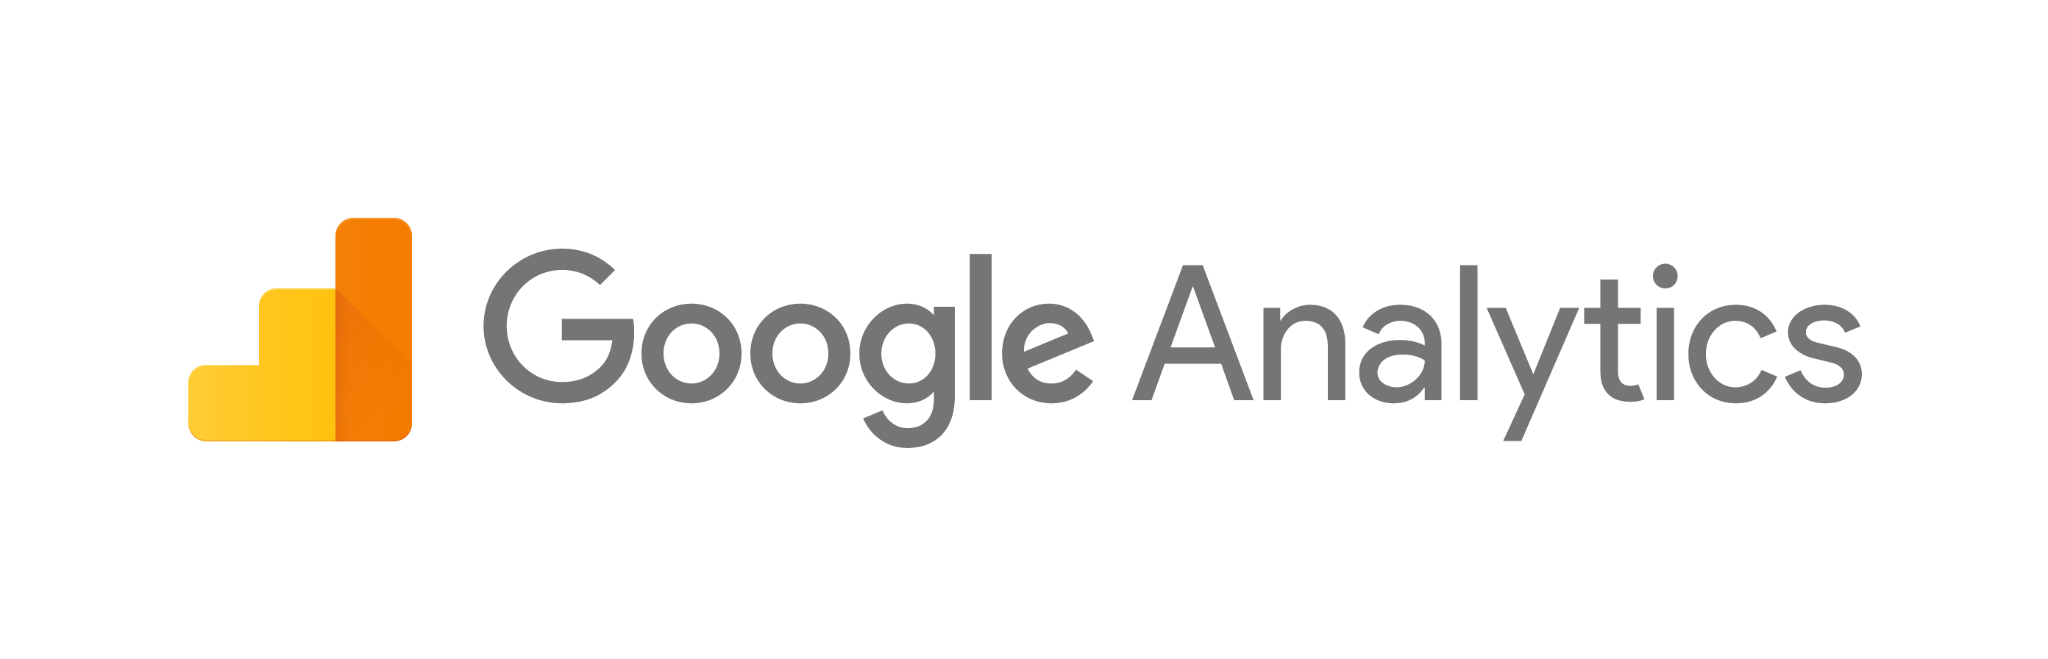 Ferramentas de Inbound Marketing: 
Google Analytics é serviço gratuito do Google para monitoramento e análise de sites